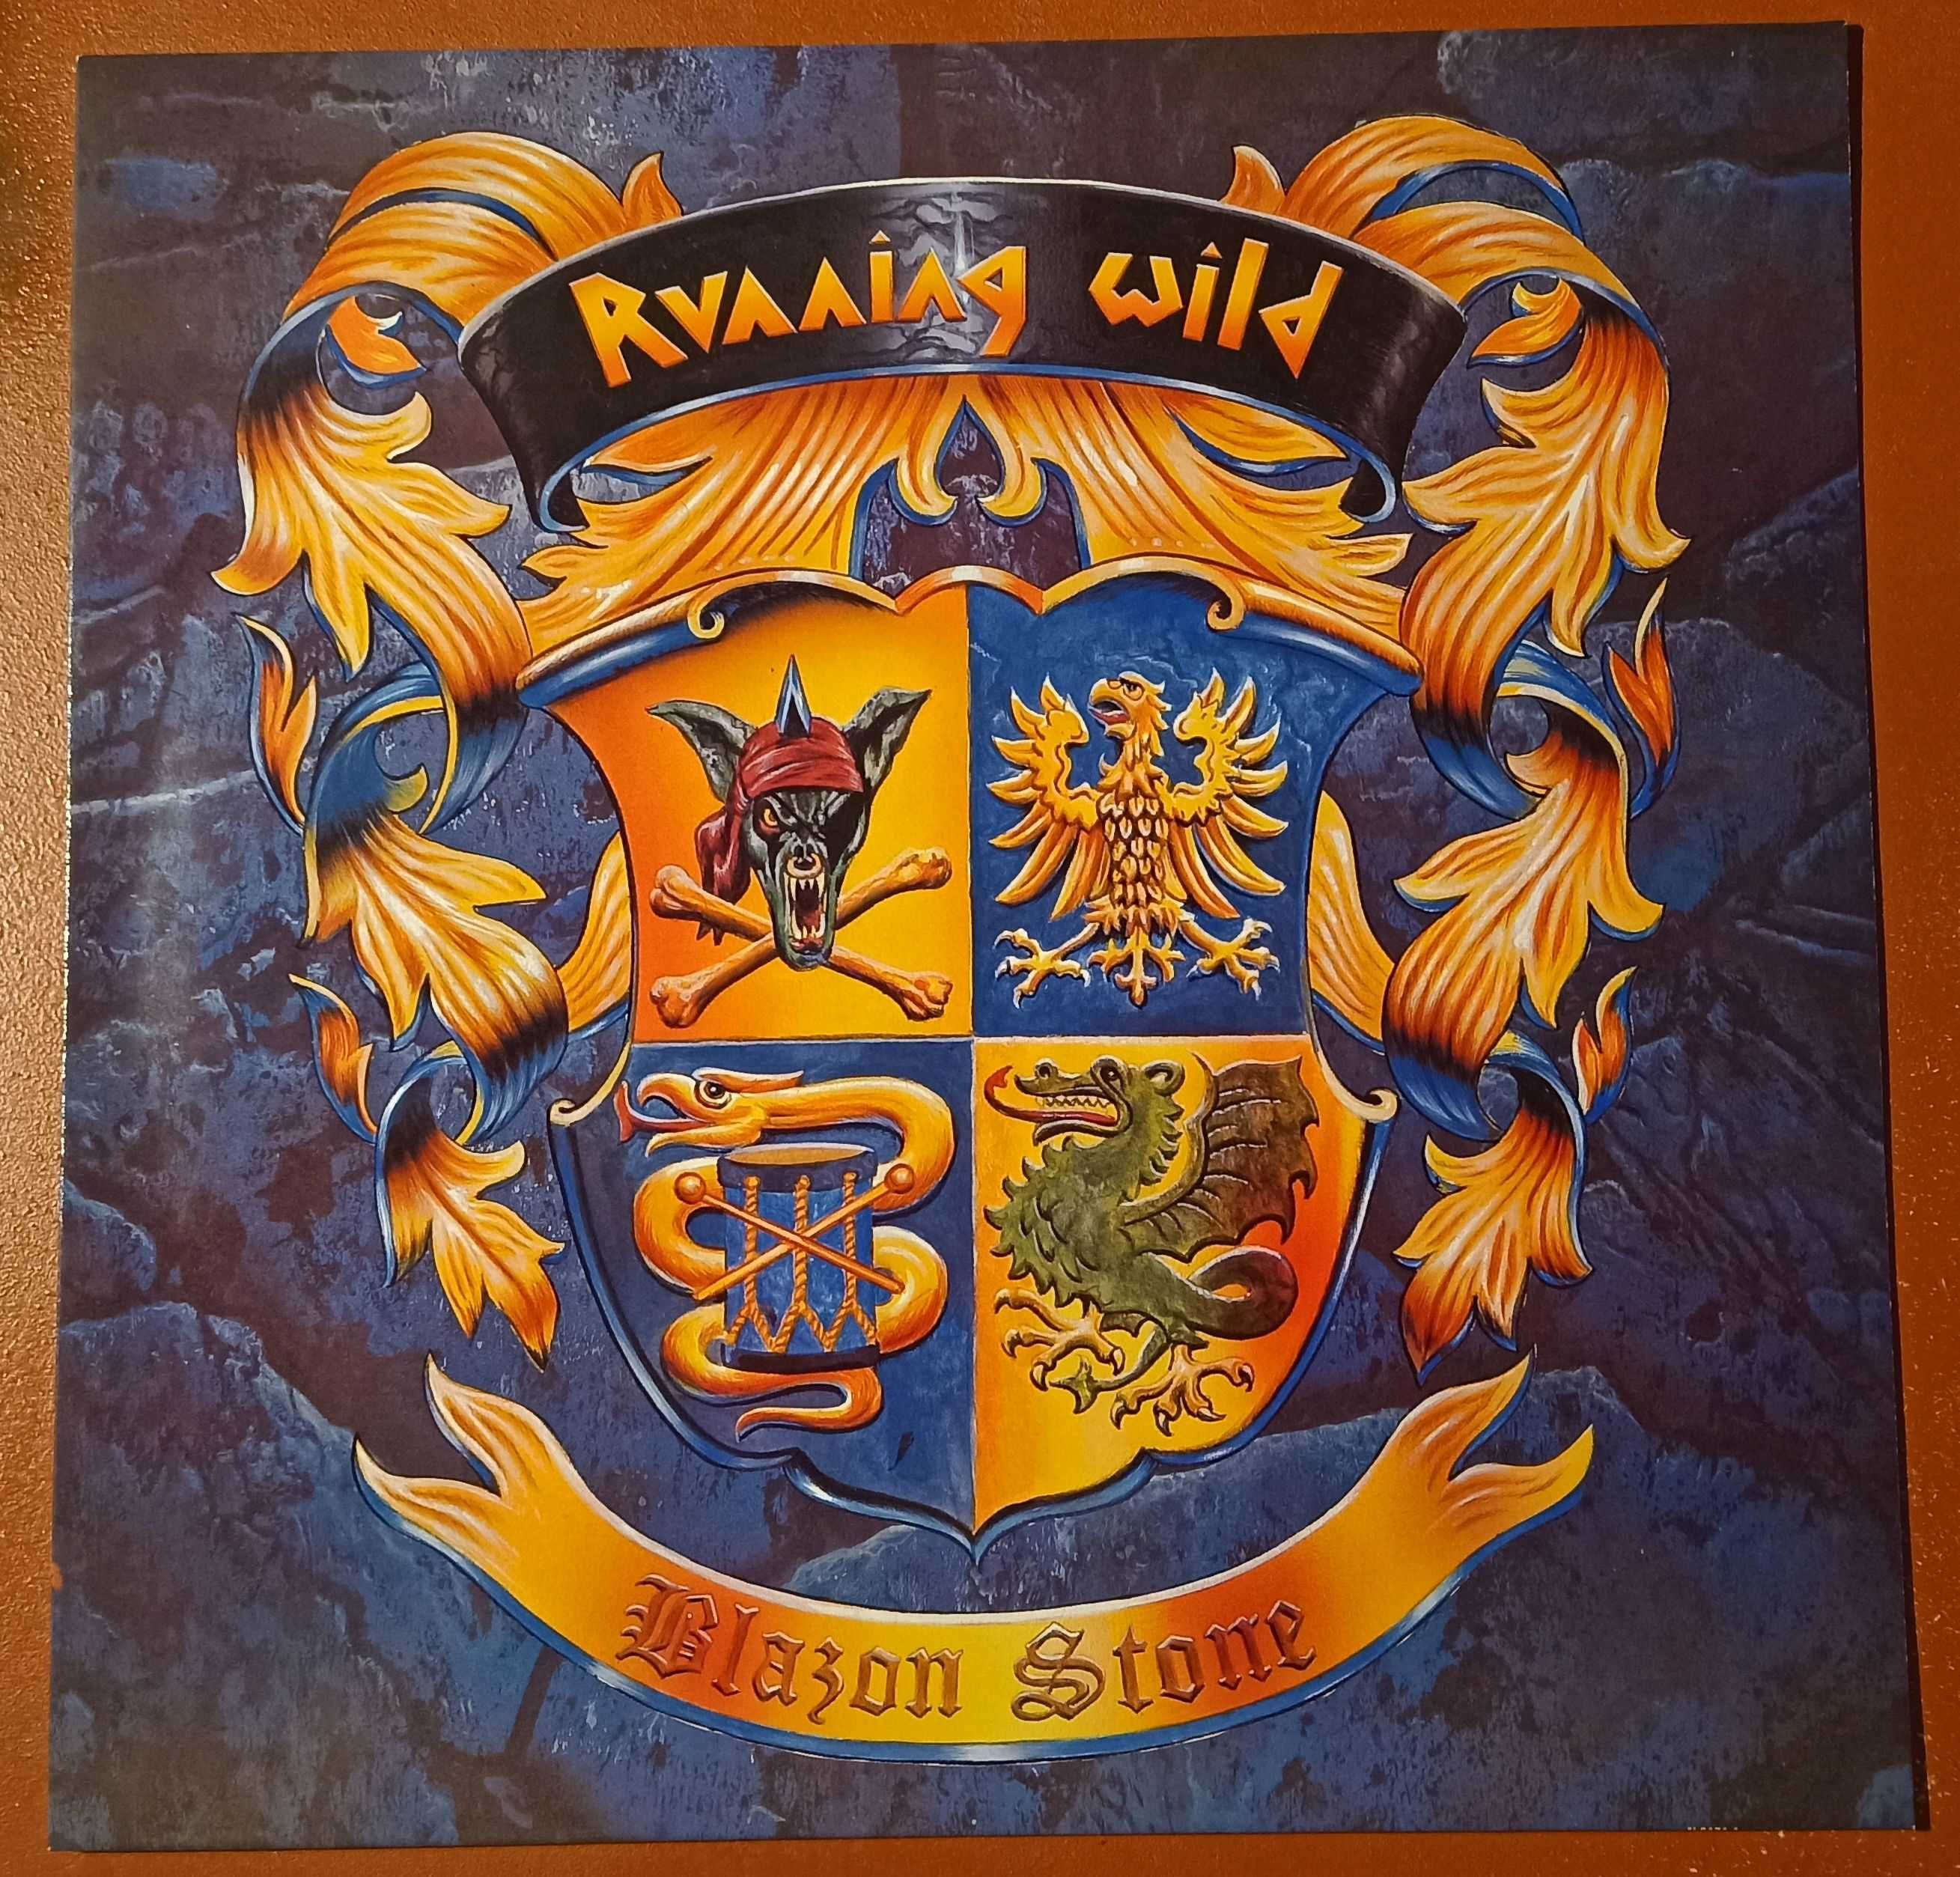 Running Wild - Blazon Stone, płyta winylowa pierwsze wydanie 1991